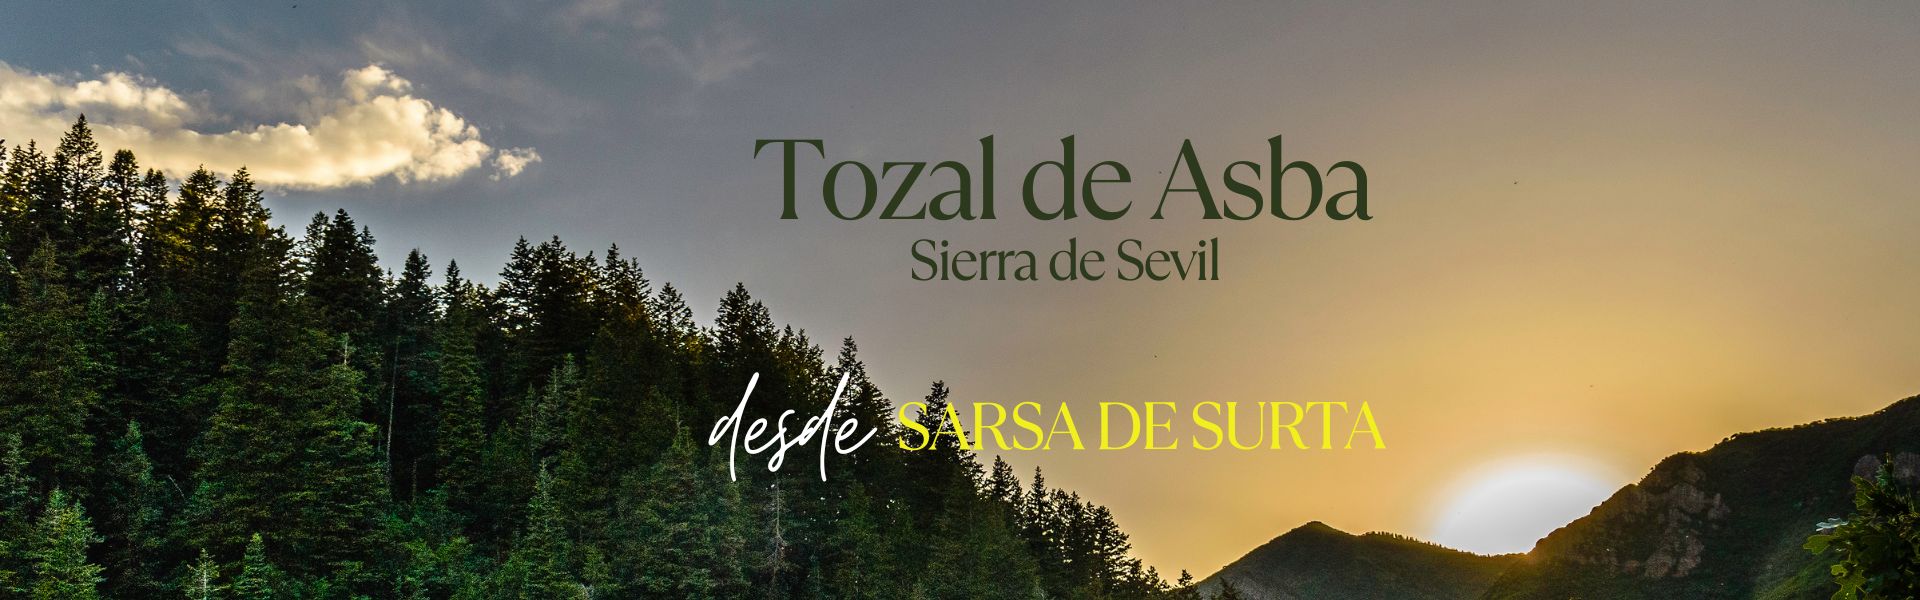 Tozal de Asba – Sierra de Sevil